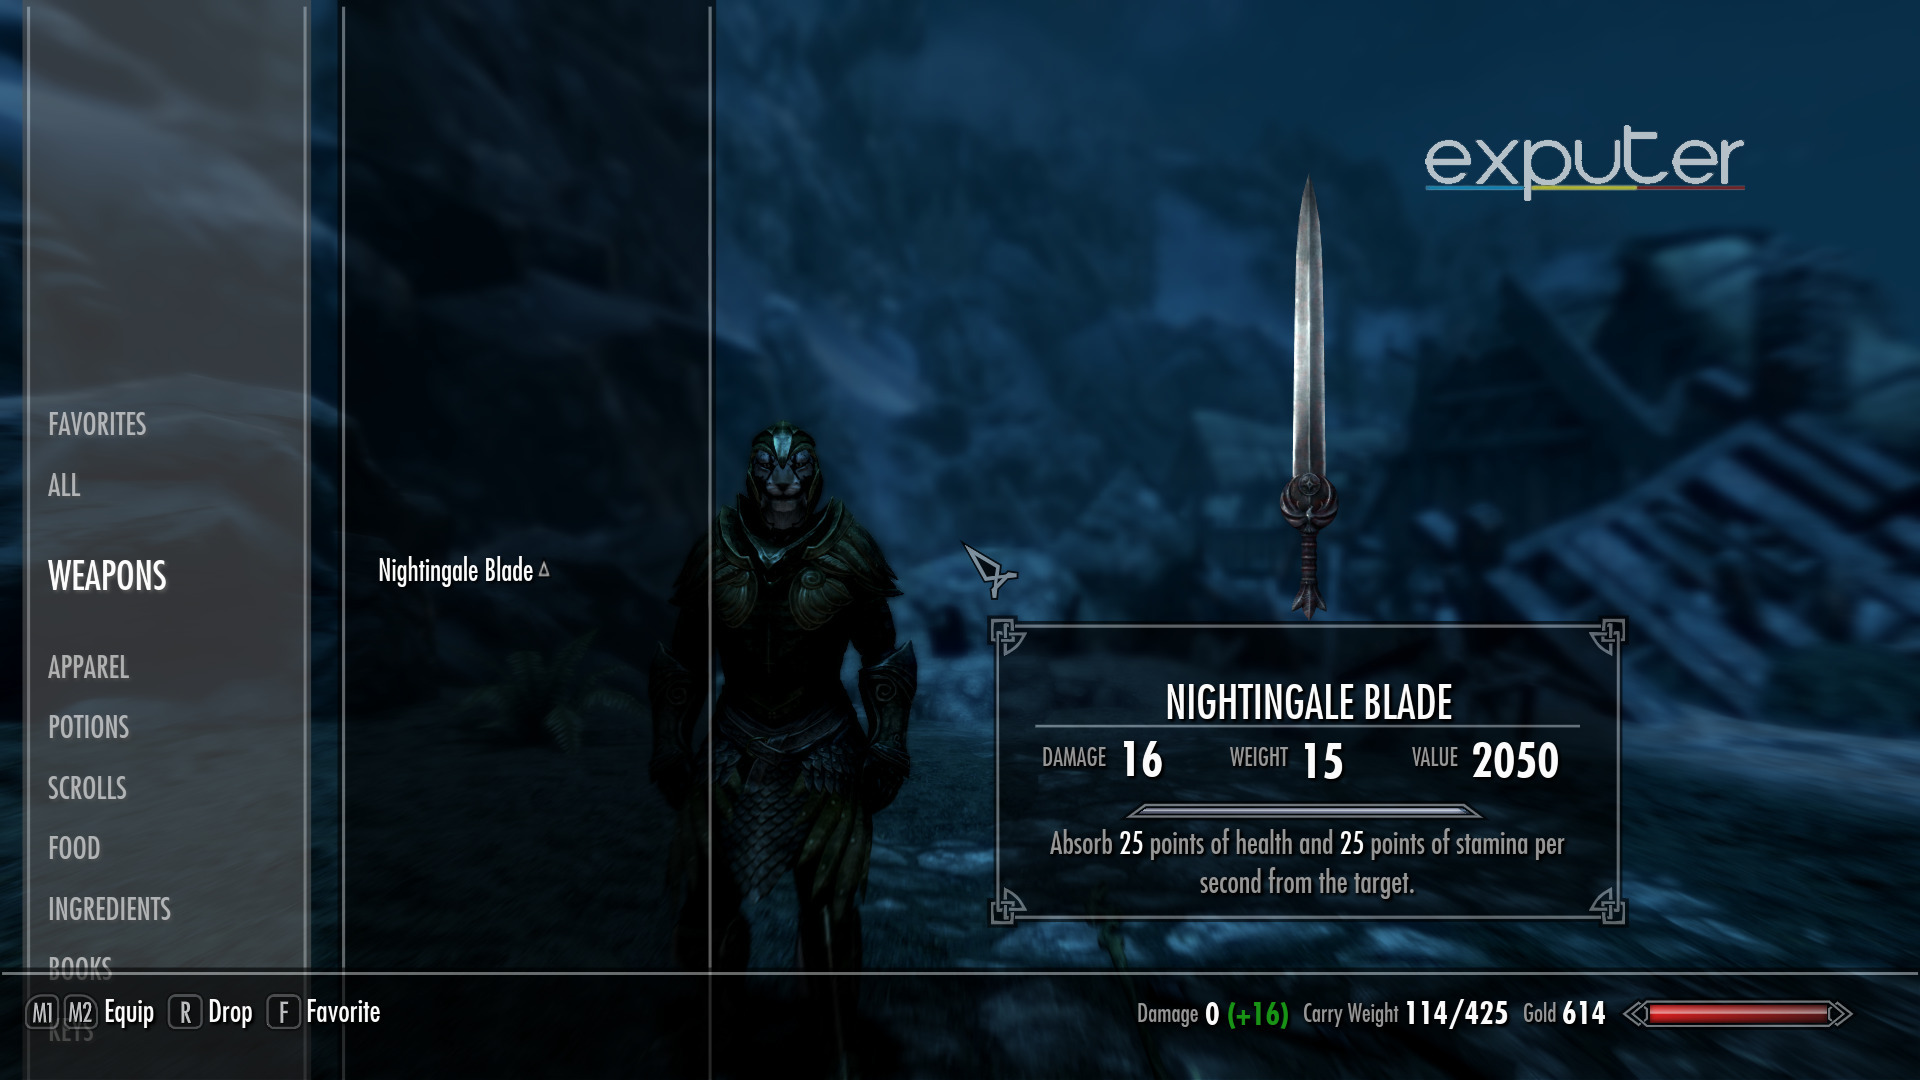 the nightingale blade